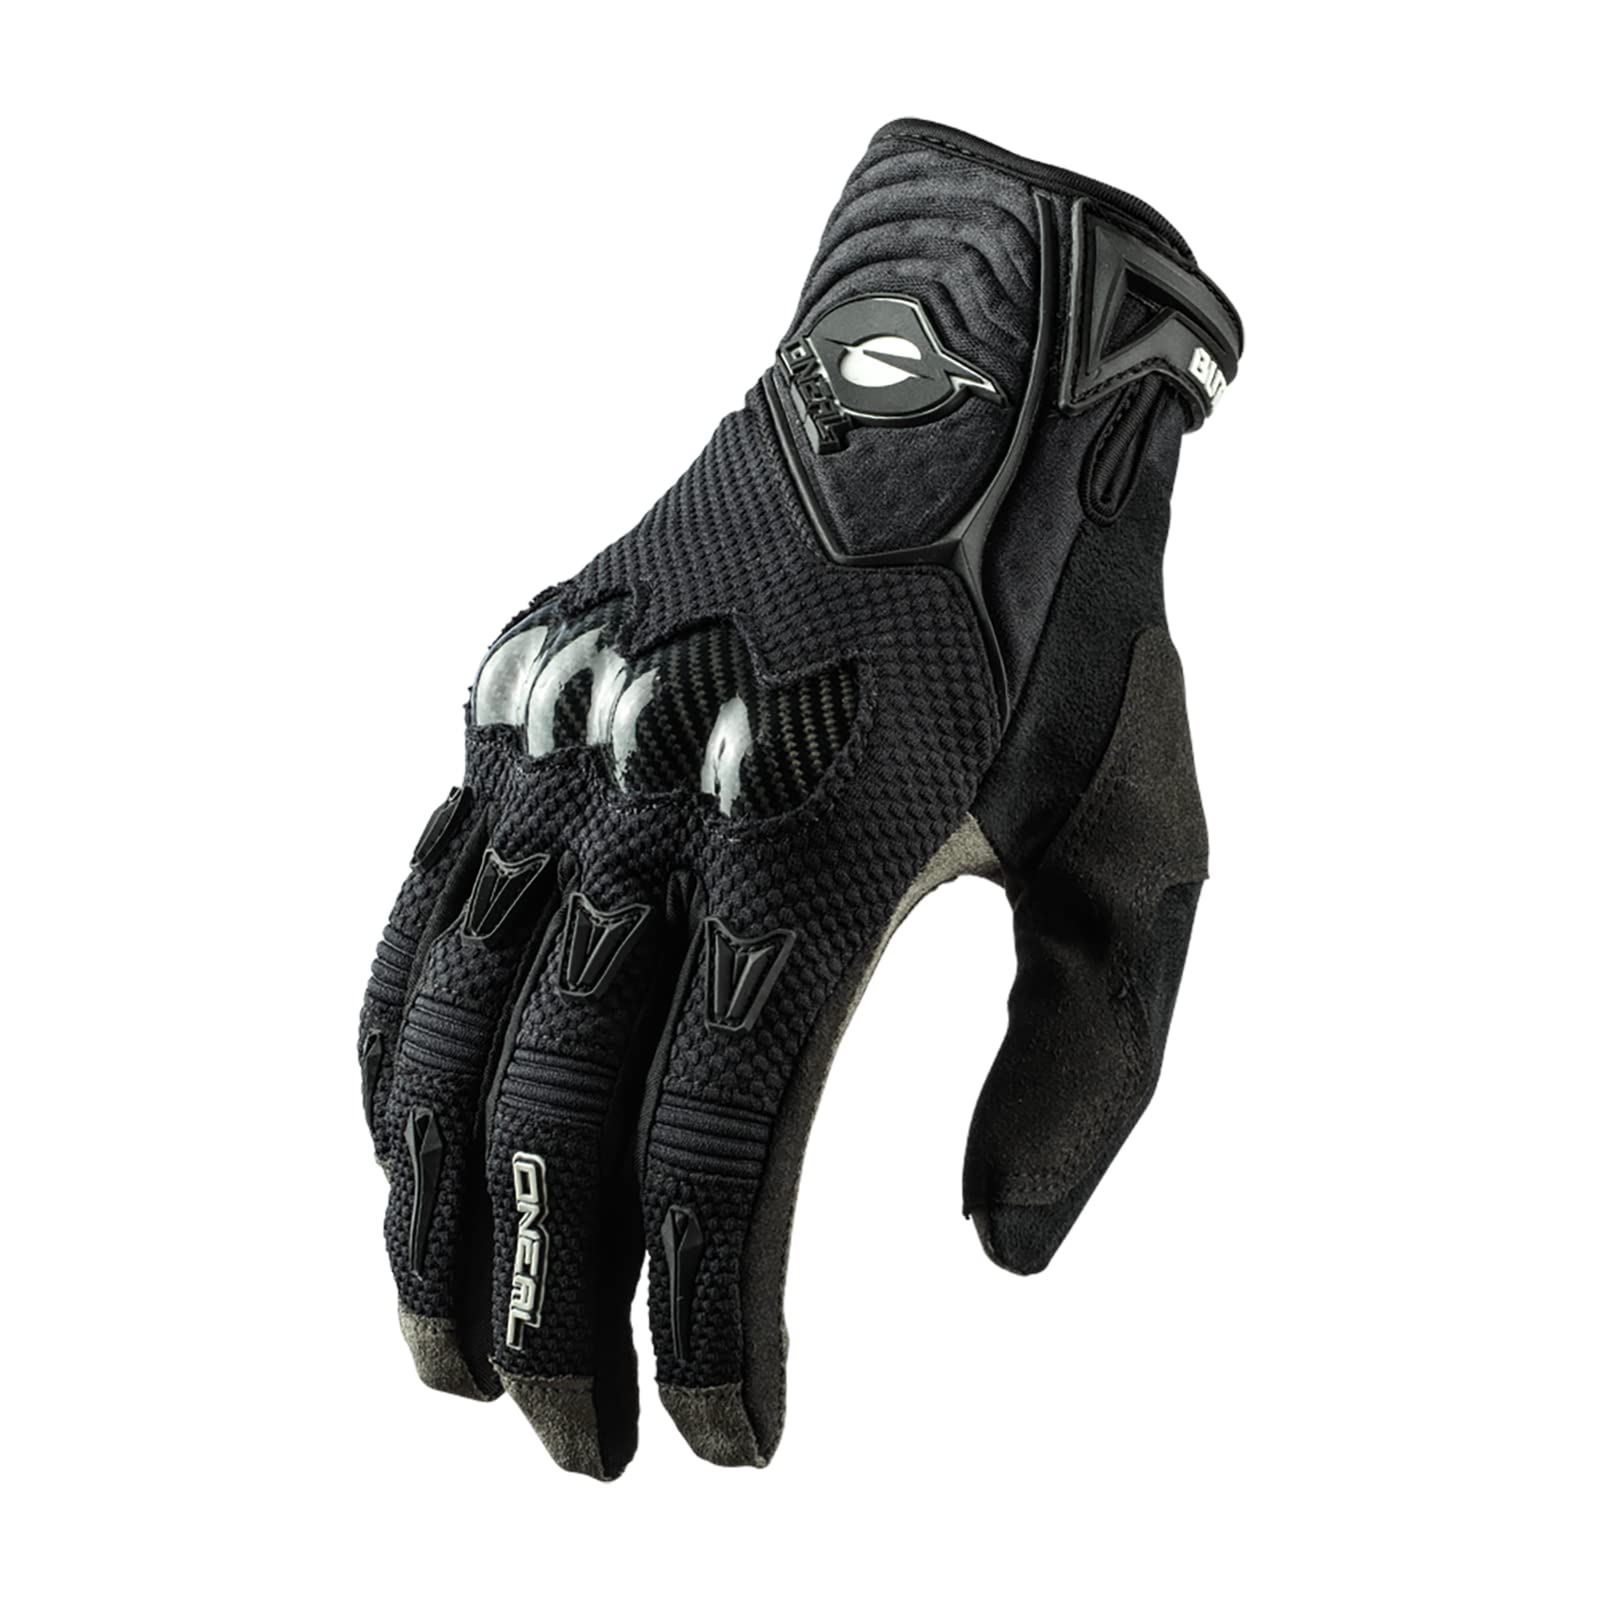 O'NEAL | Fahrrad- & Motocross-Handschuhe | MX MTB DH FR Downhill Freeride | 4-Wege-Stretch, Karbon-Knöchelschutz, Silikonbeschichtet | Butch Carbon Glove | Erwachsene | Schwarz | Größe XL von O'NEAL